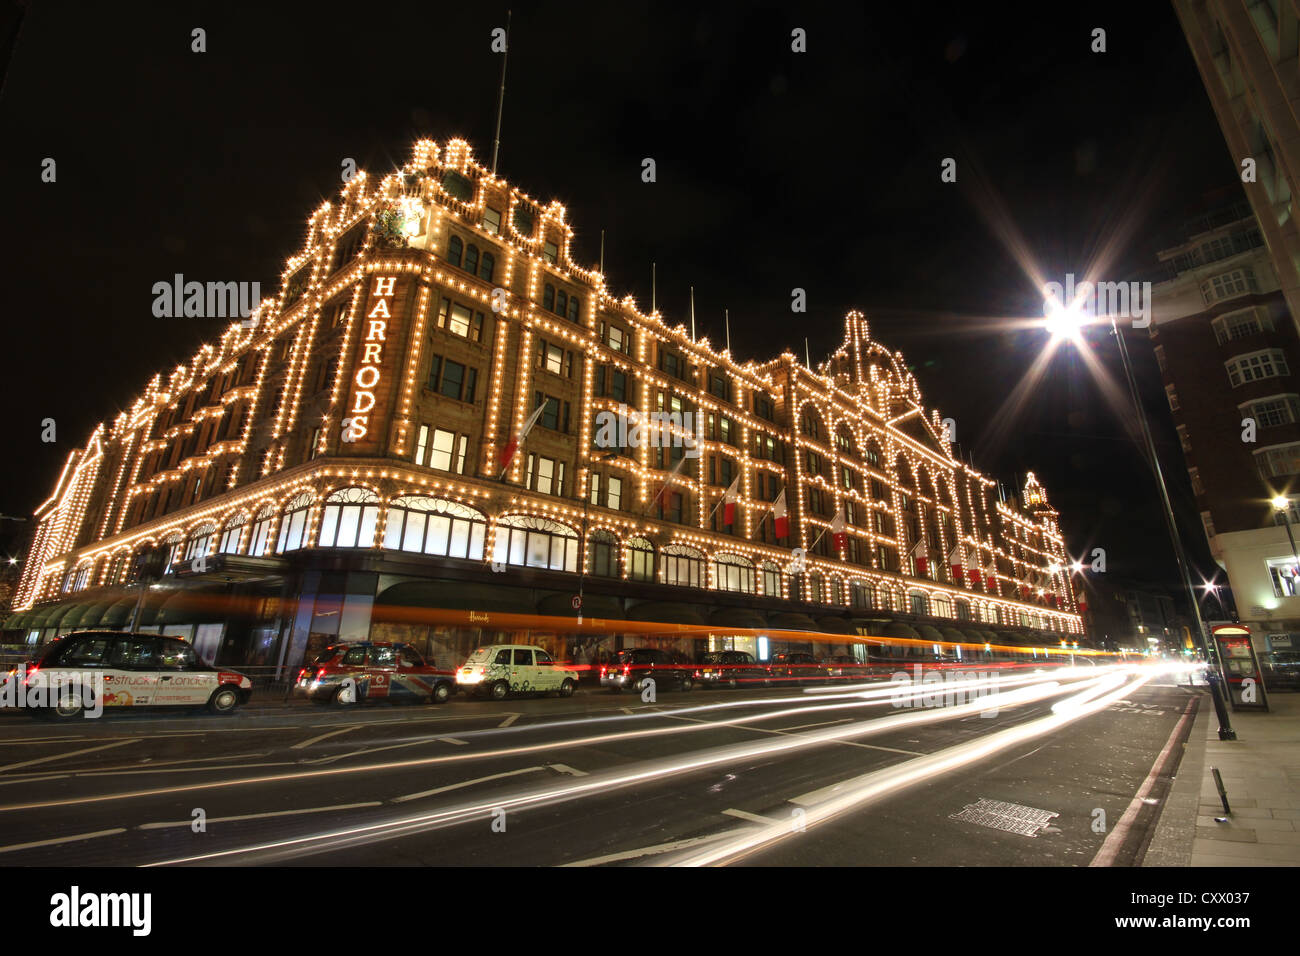 London, Londres, ville, europe, une belle photo de Nightsbridge Harrods par nuit Banque D'Images